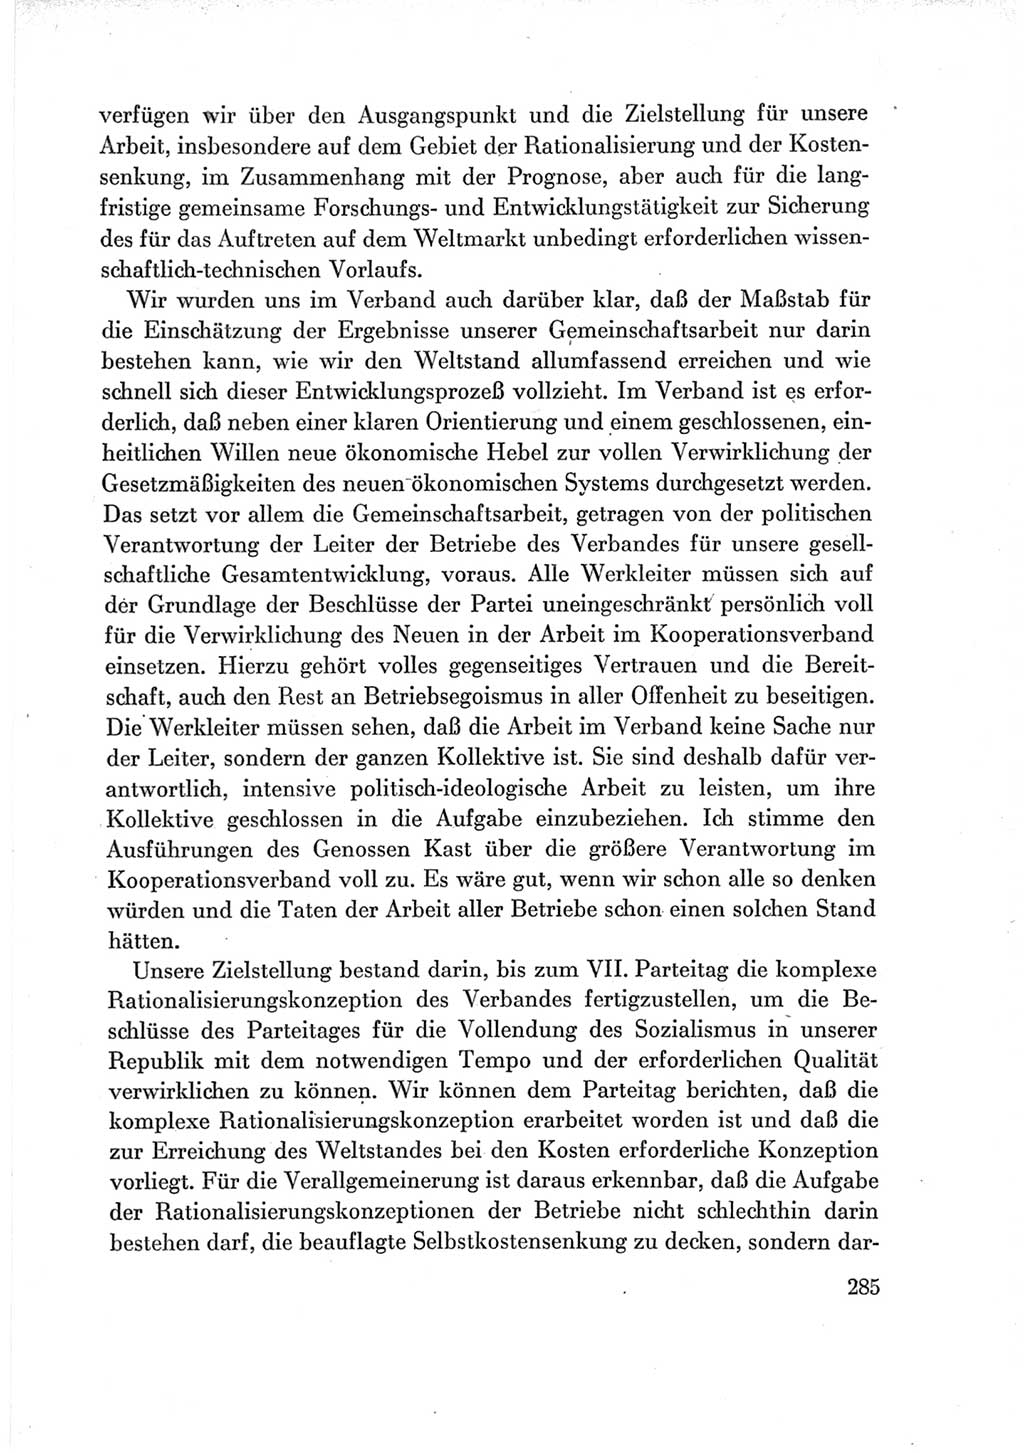 Protokoll der Verhandlungen des Ⅶ. Parteitages der Sozialistischen Einheitspartei Deutschlands (SED) [Deutsche Demokratische Republik (DDR)] 1967, Band Ⅲ, Seite 285 (Prot. Verh. Ⅶ. PT SED DDR 1967, Bd. Ⅲ, S. 285)